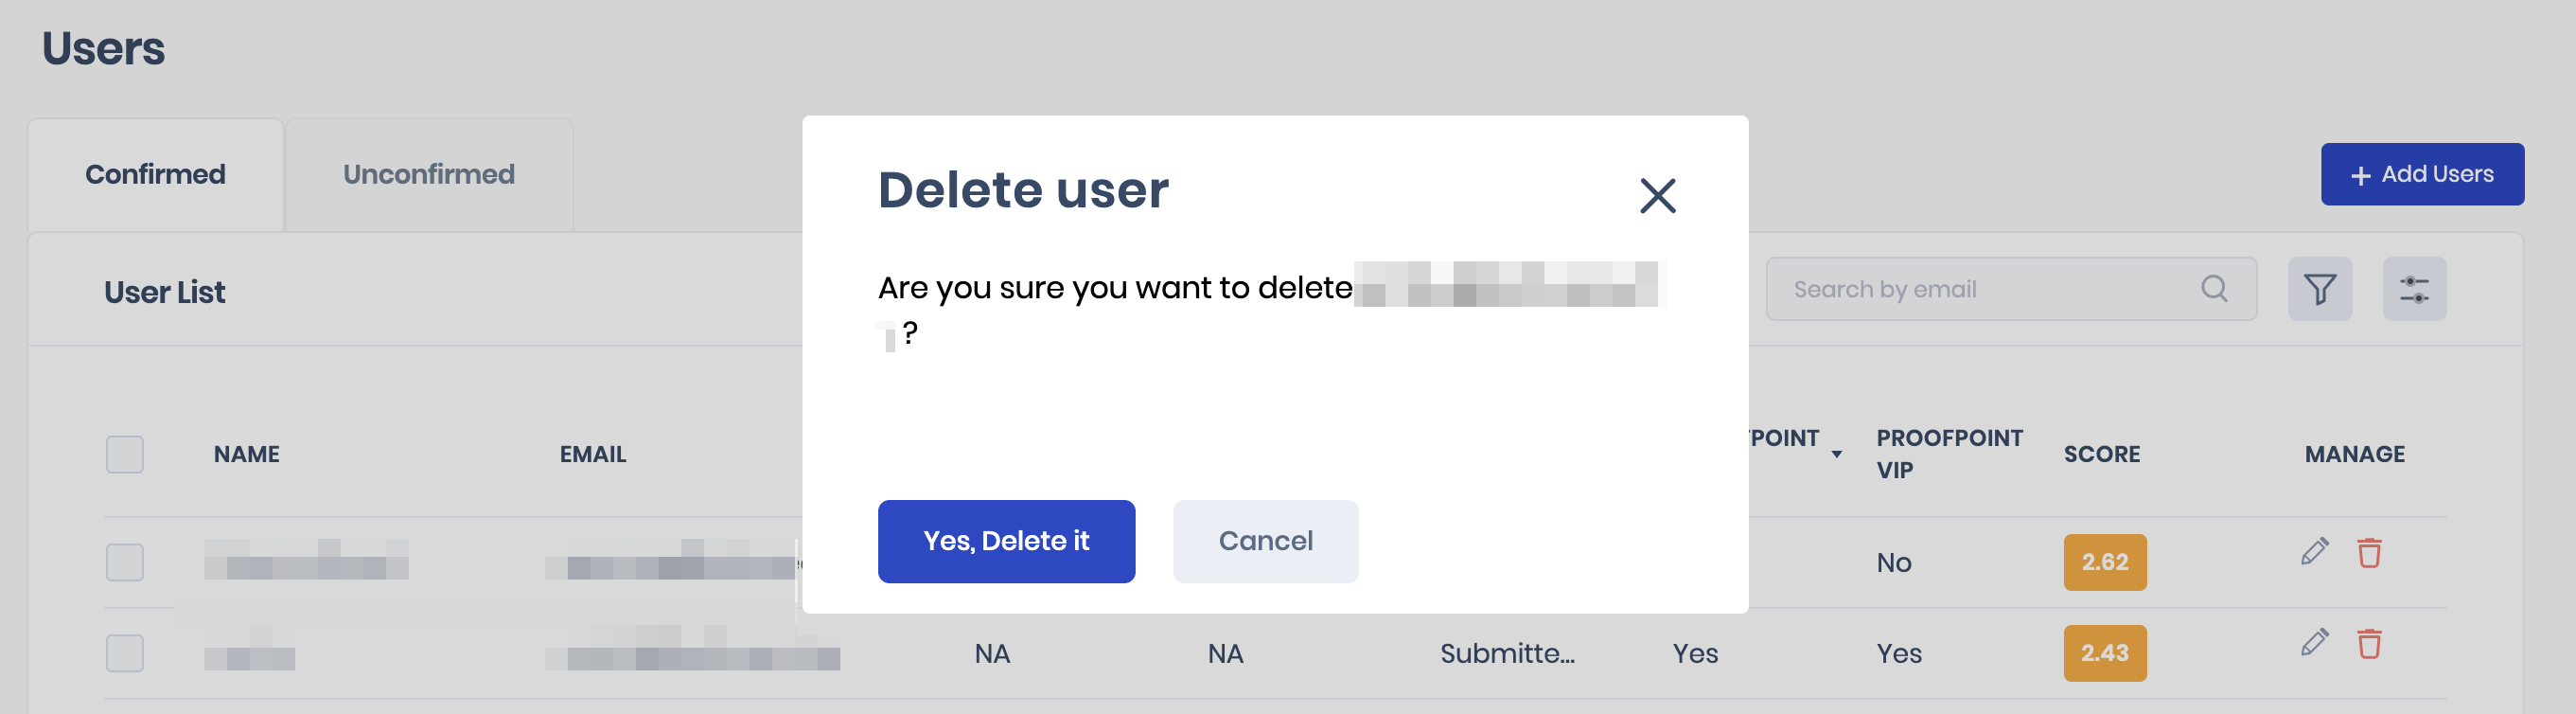 delete users